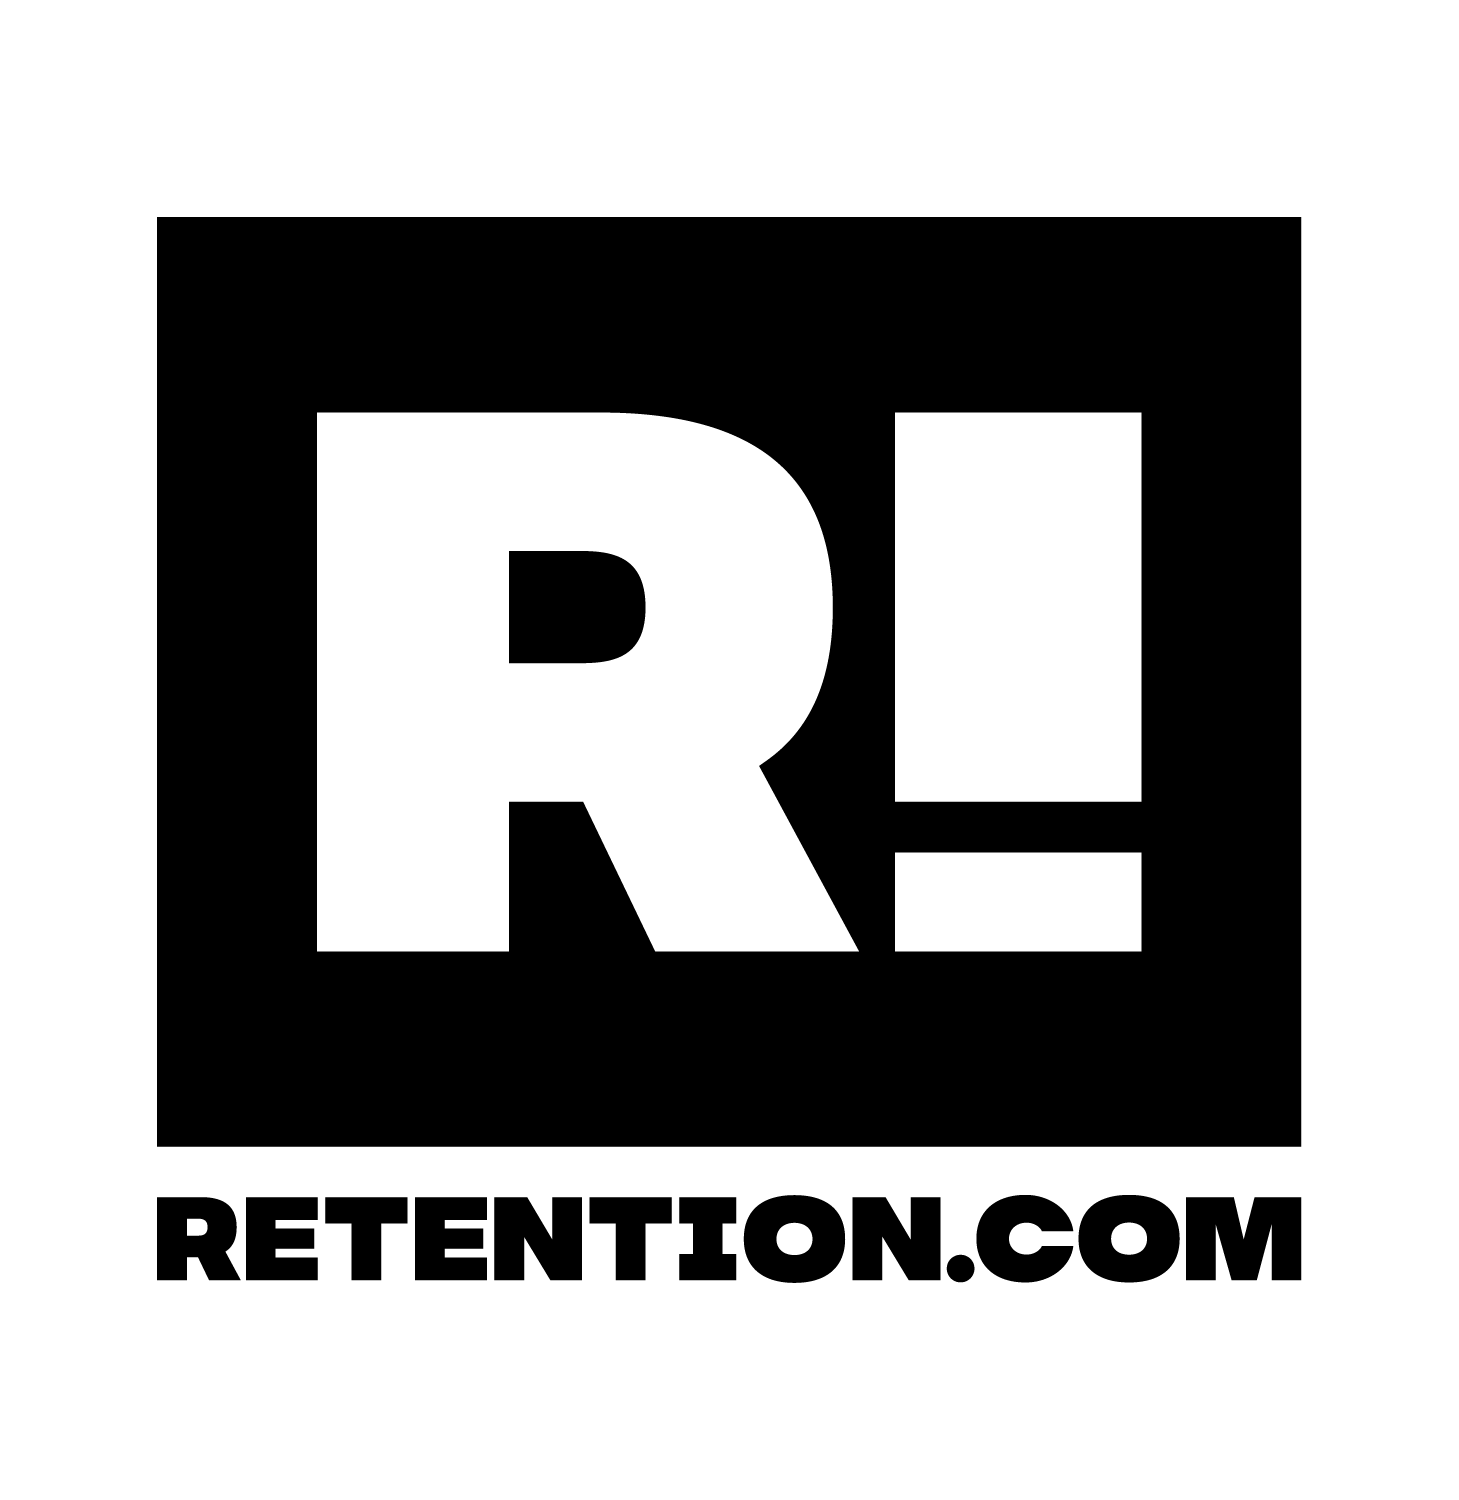 Retention.com logo